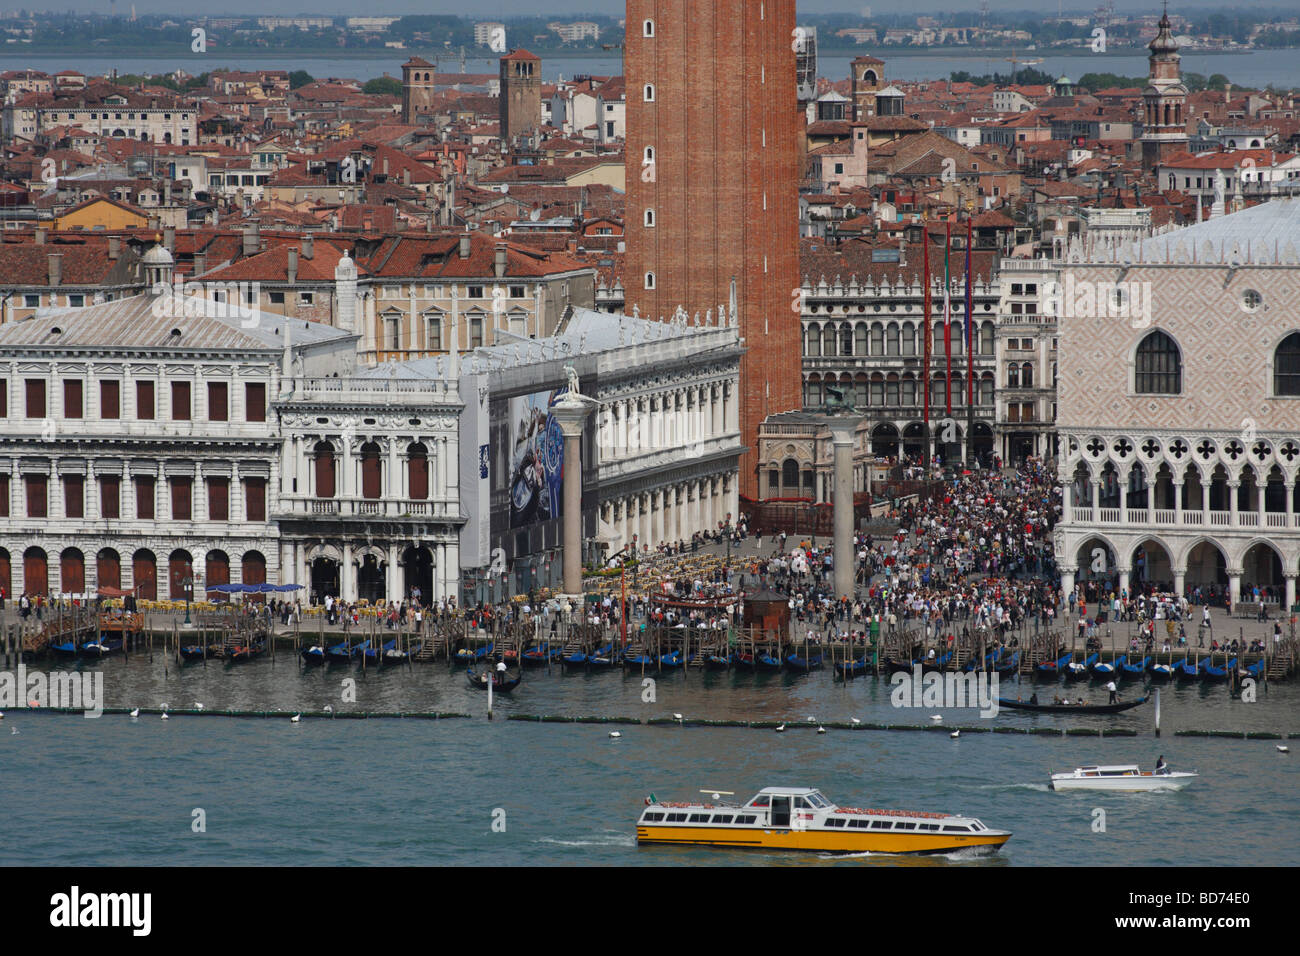 Piazza San Marco, view from San Giorgio Maggiore, Venice, Italy. Stock Photo